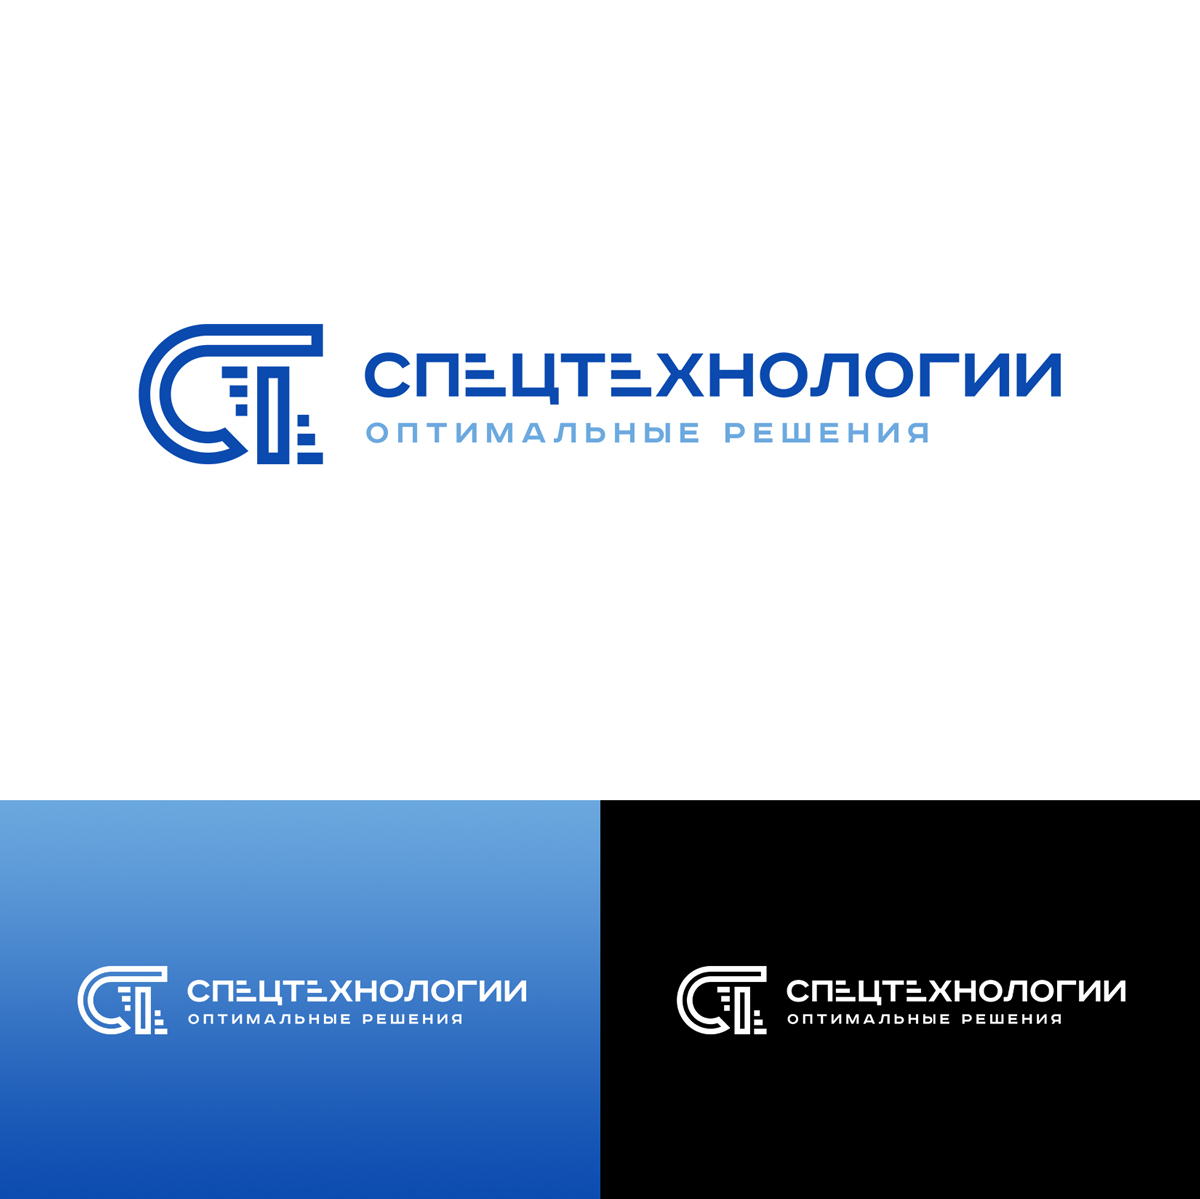 Разработка логотипа для компании железнодорожной отрасли